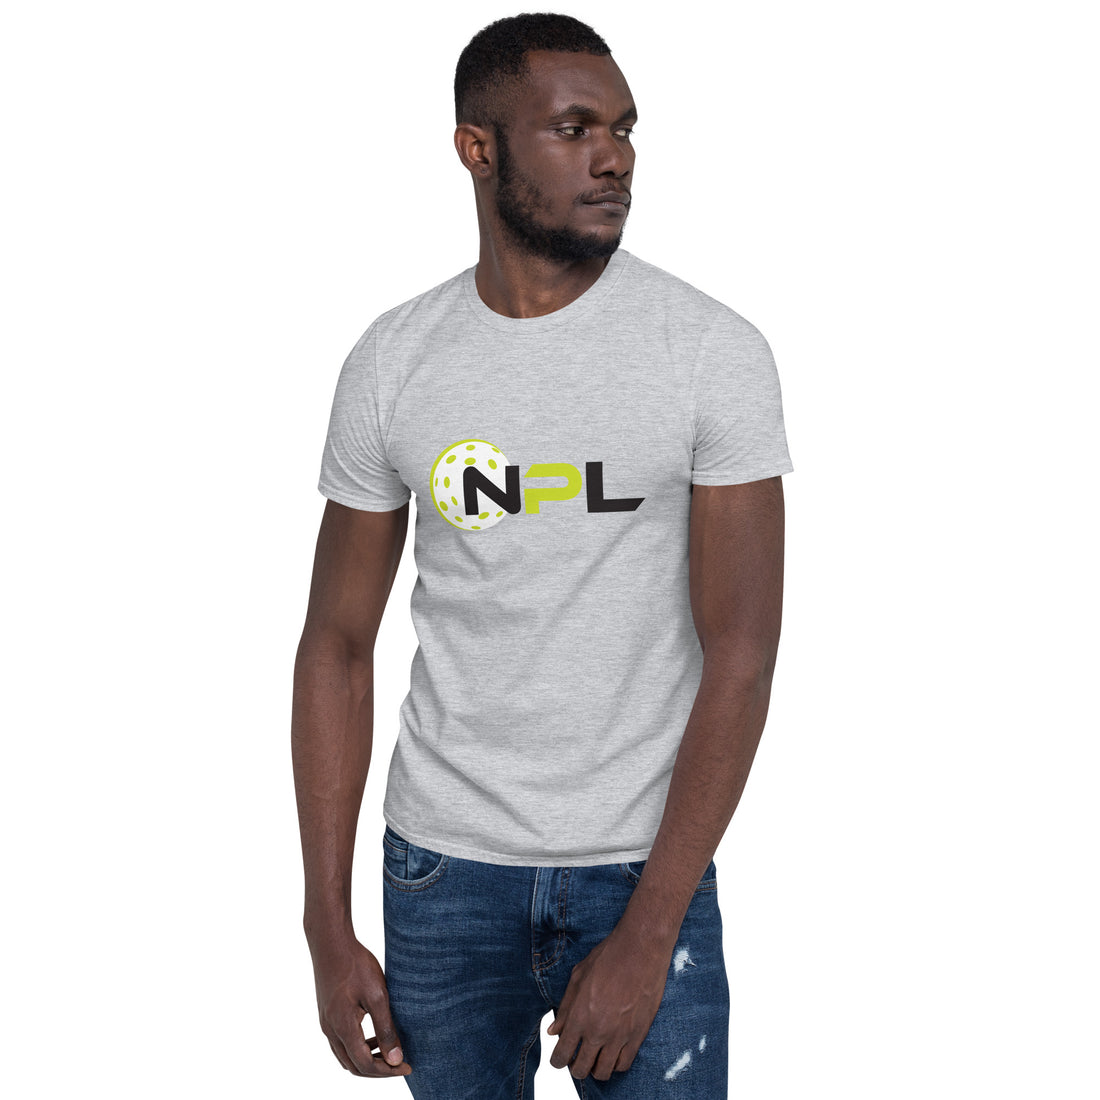 NPL™ Short-Sleeve Unisex T-Shirt Gray or White